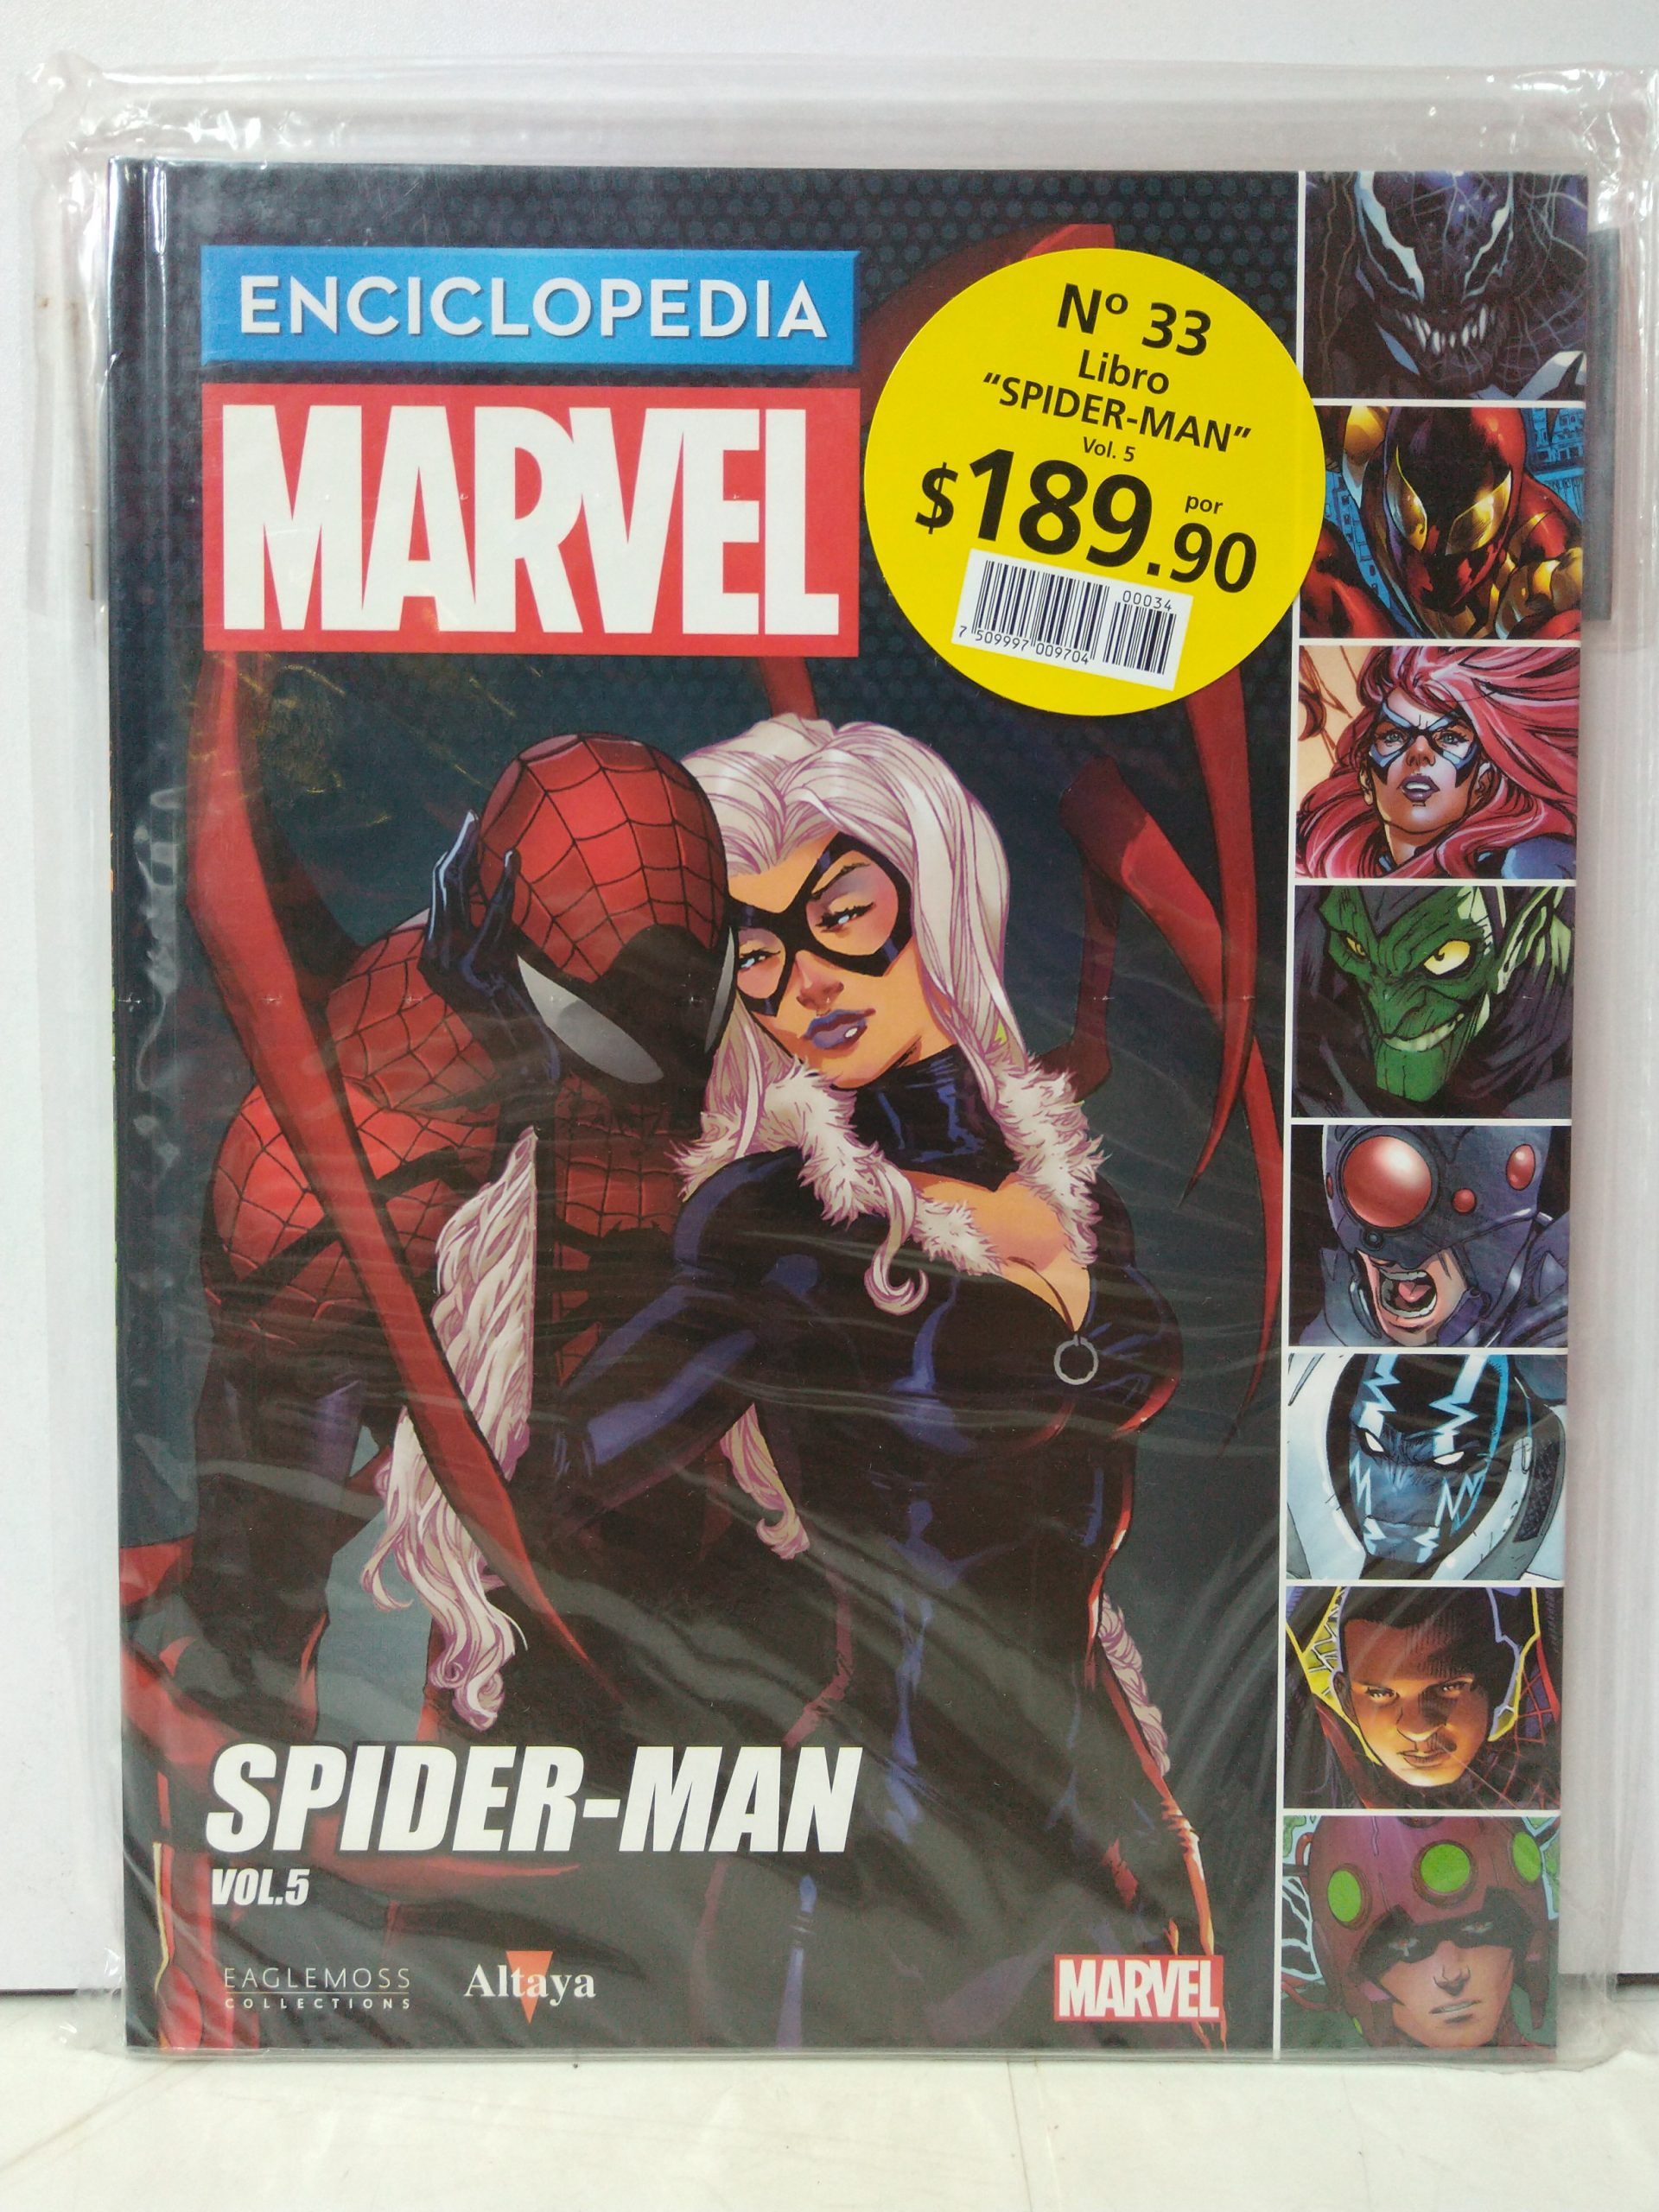 Enciclopedia Marvel Entrega 33, Libro 34: Spider-Man Vol. 5 - CodeX